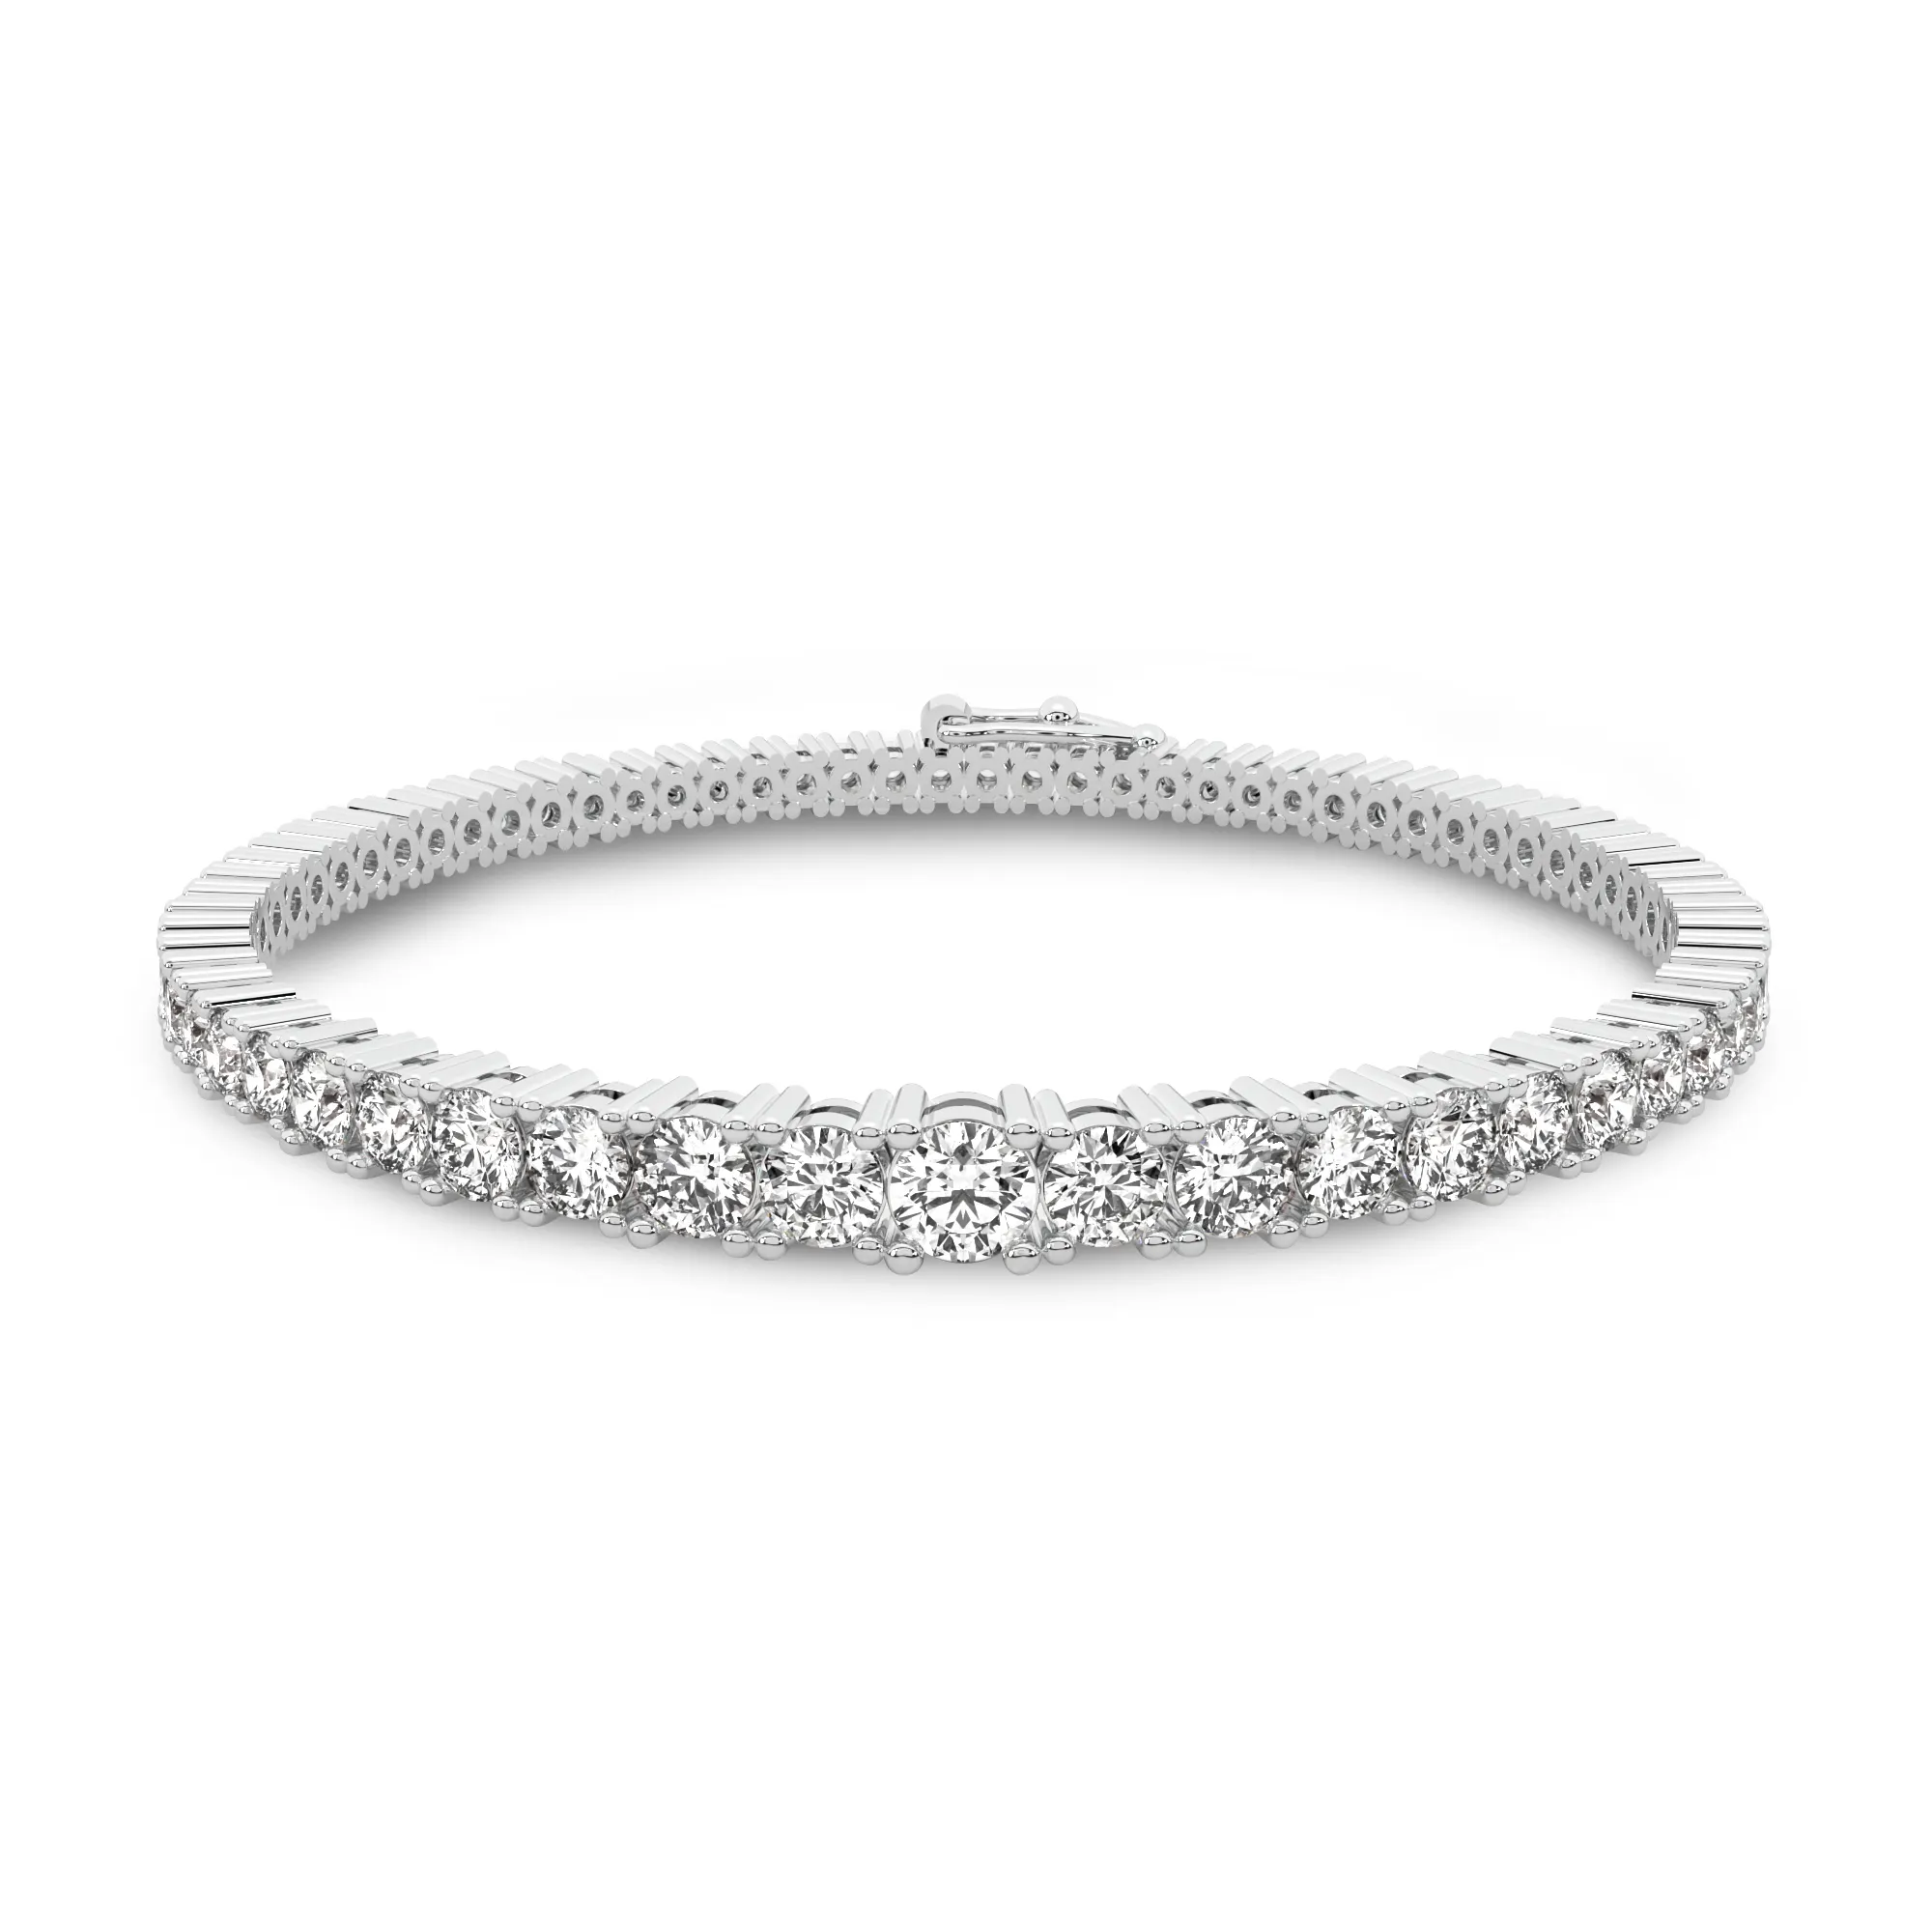 Beste Kwaliteit Luxe Design Ronde Lab Diamant Tennis Armband Met 3 Ct Diamant Gewicht En D Kleur Beschikbaar Bij Export